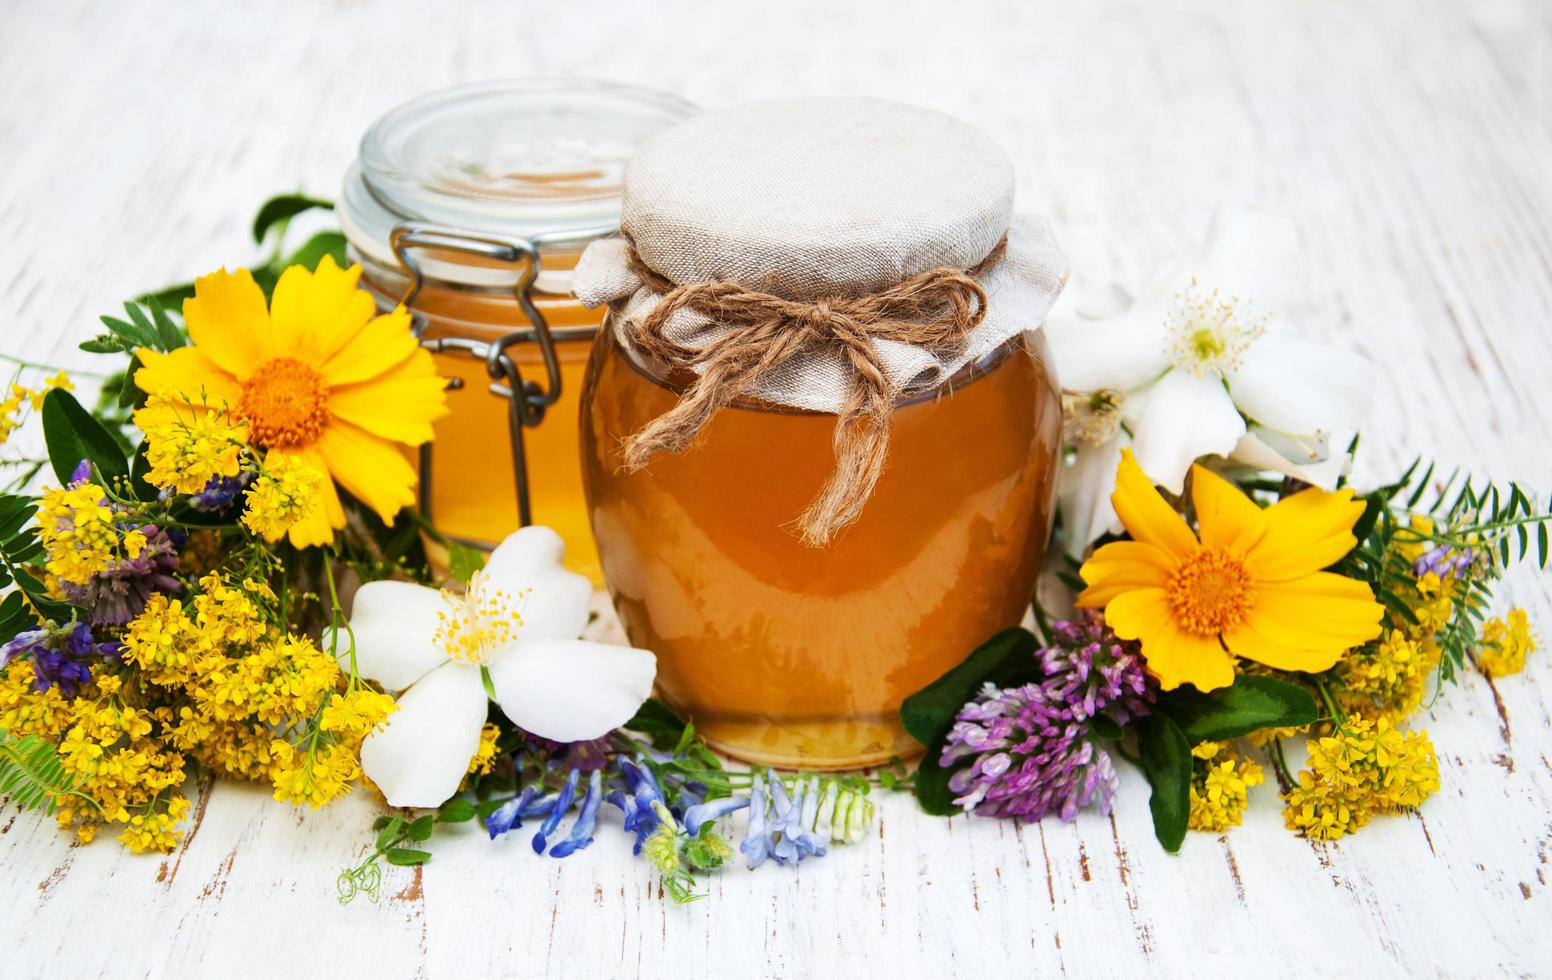 honung och vilda blommor på en träbakgrund foto